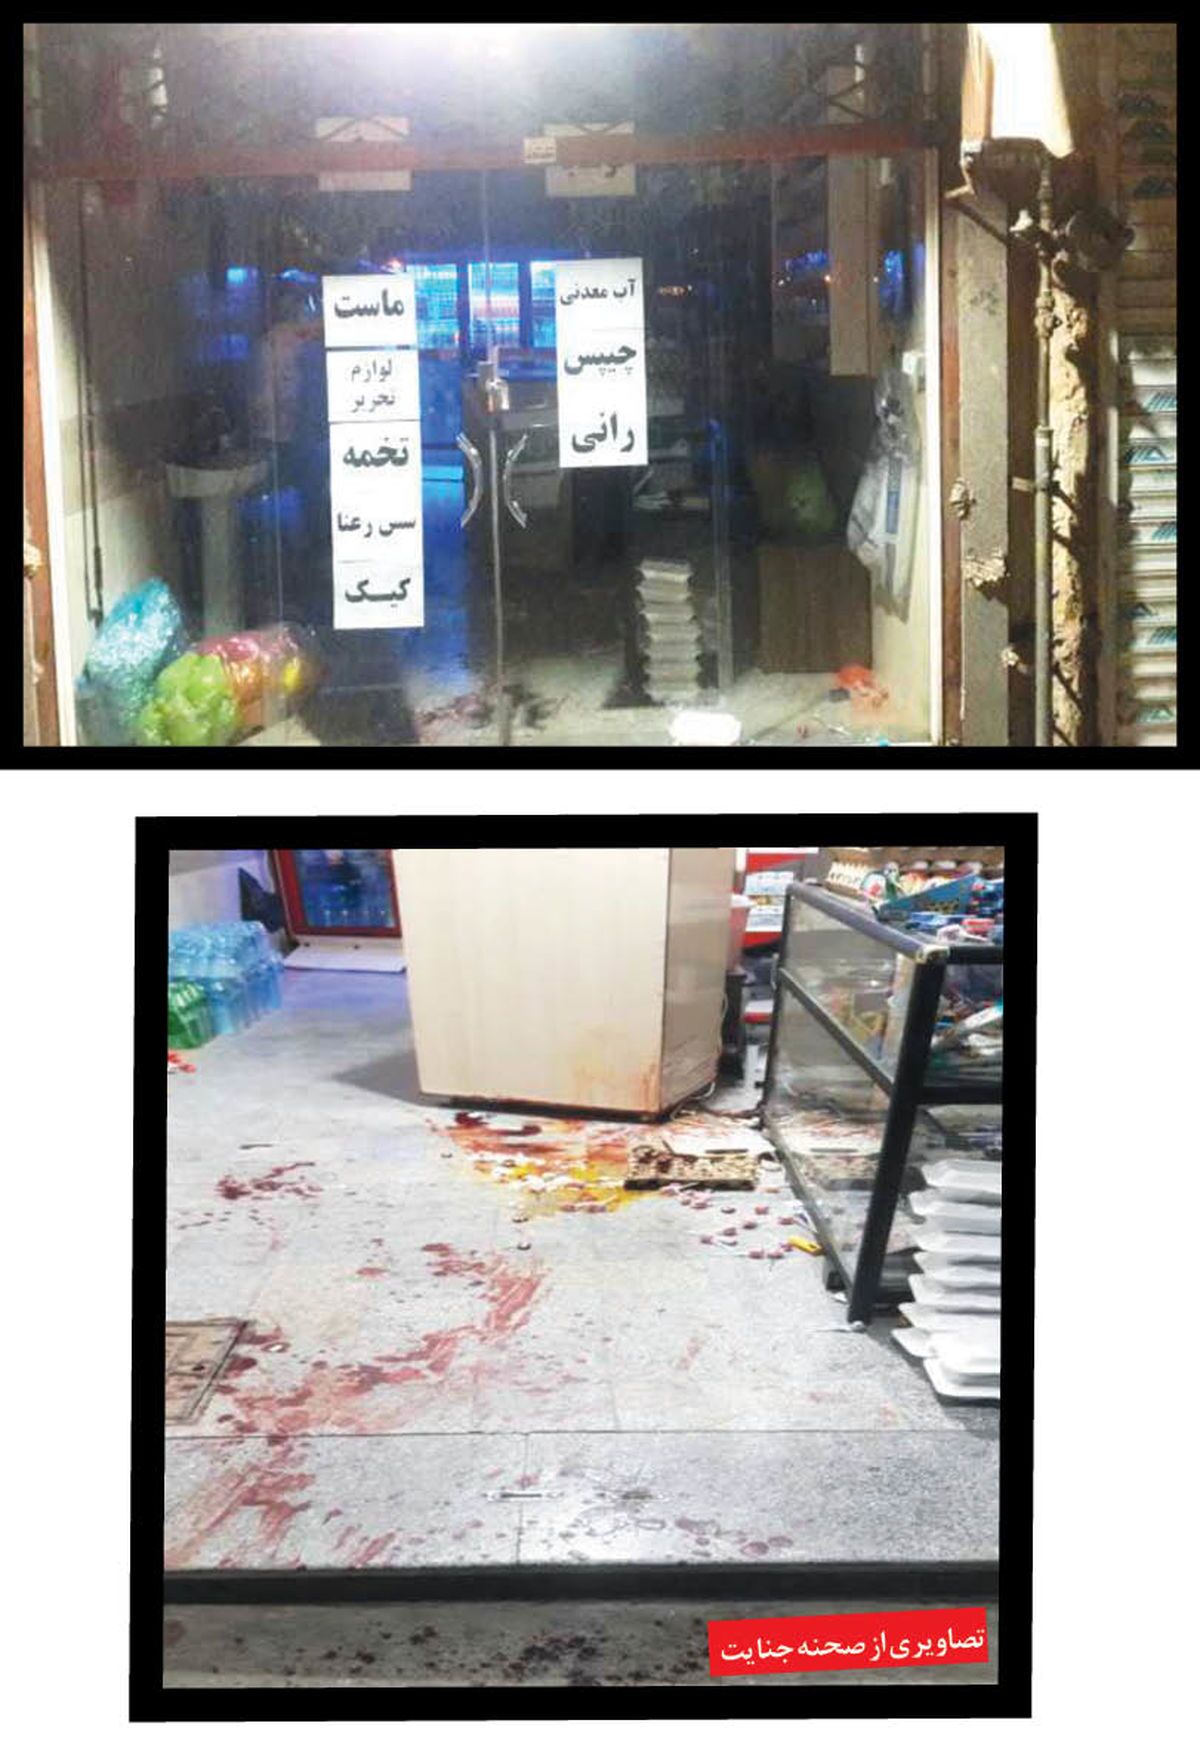 مرد مشهدی در سوپر مارکت خود به قتل رسید